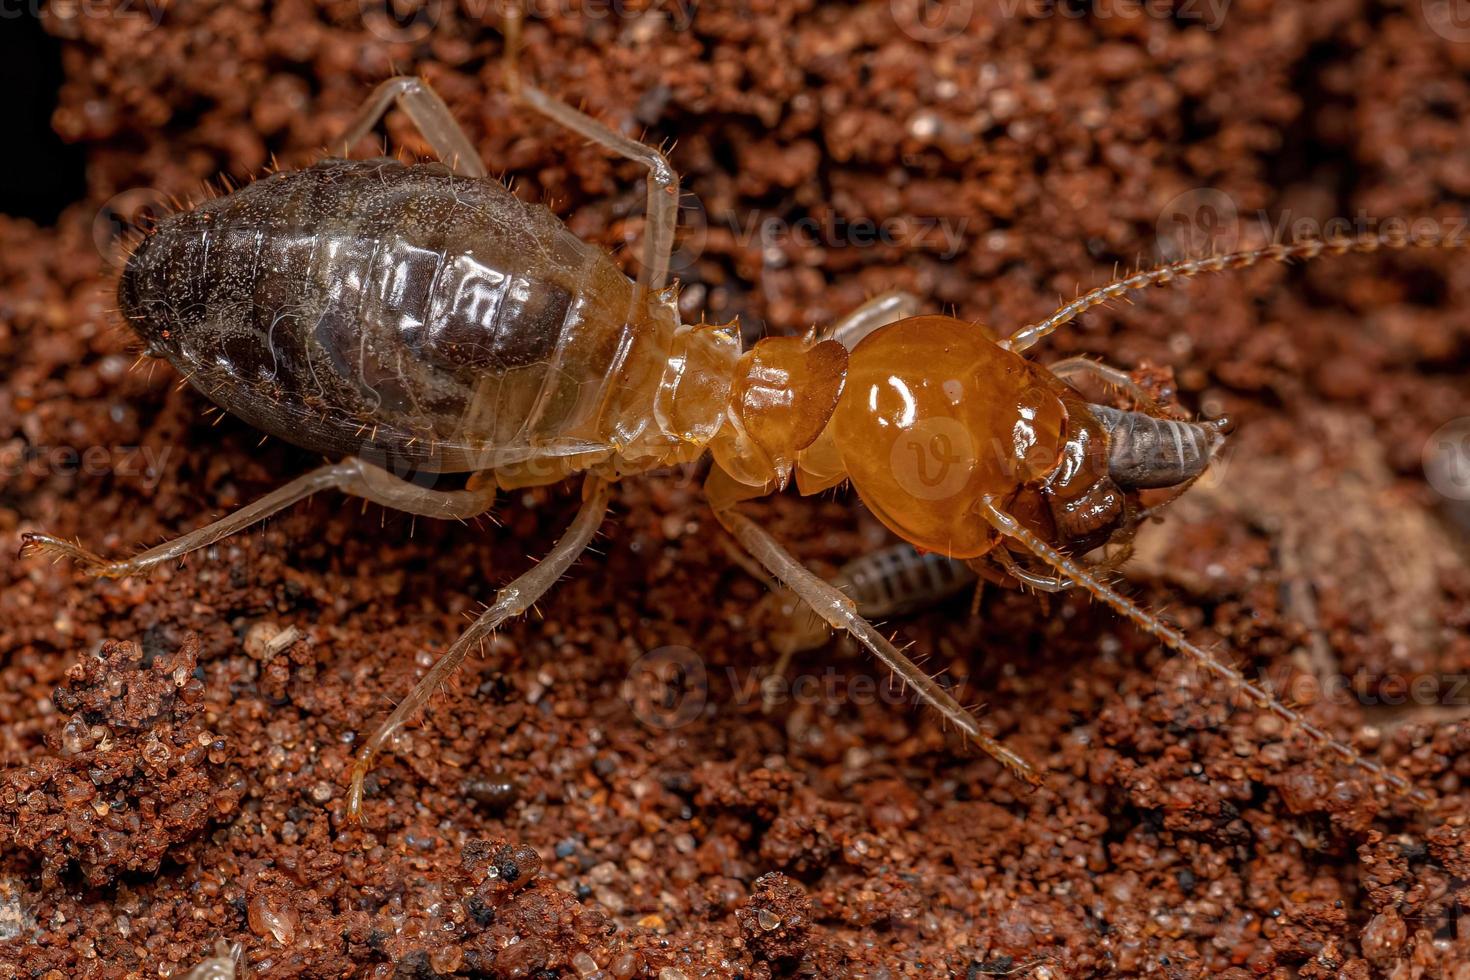 ausgewachsene Termiten mit Kiefernase jagen kleinere Termiten foto